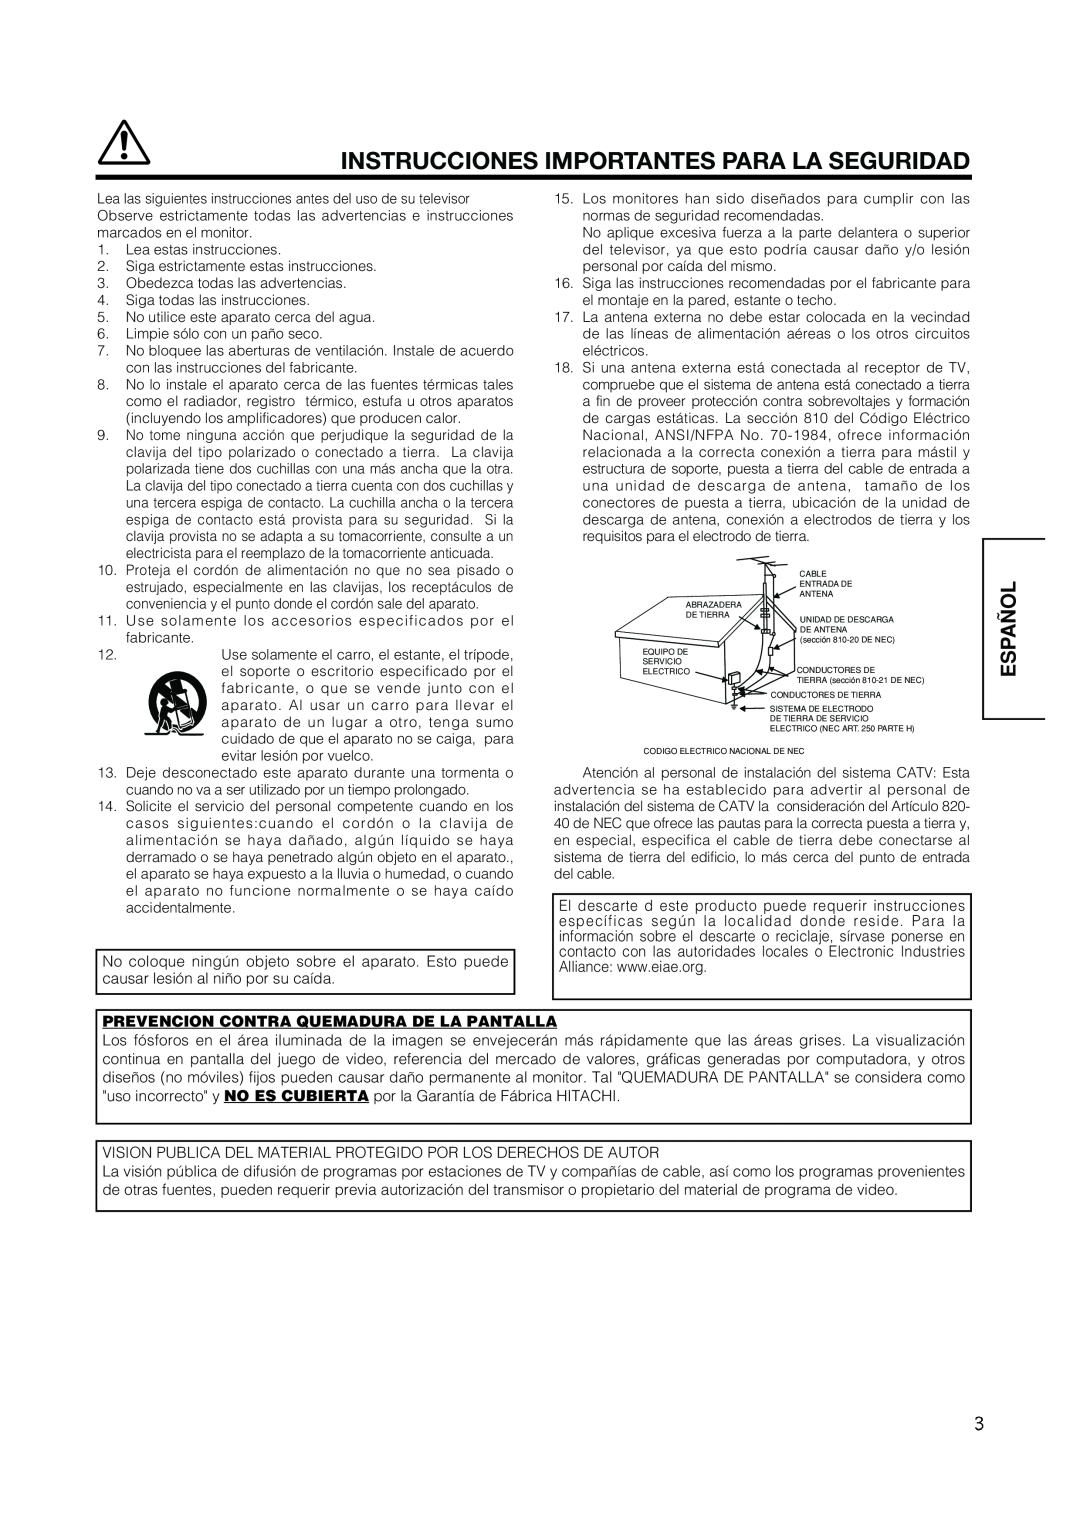 Hitachi PW1A user manual Instrucciones Importantes Para La Seguridad, Español, Prevencion Contra Quemadura De La Pantalla 